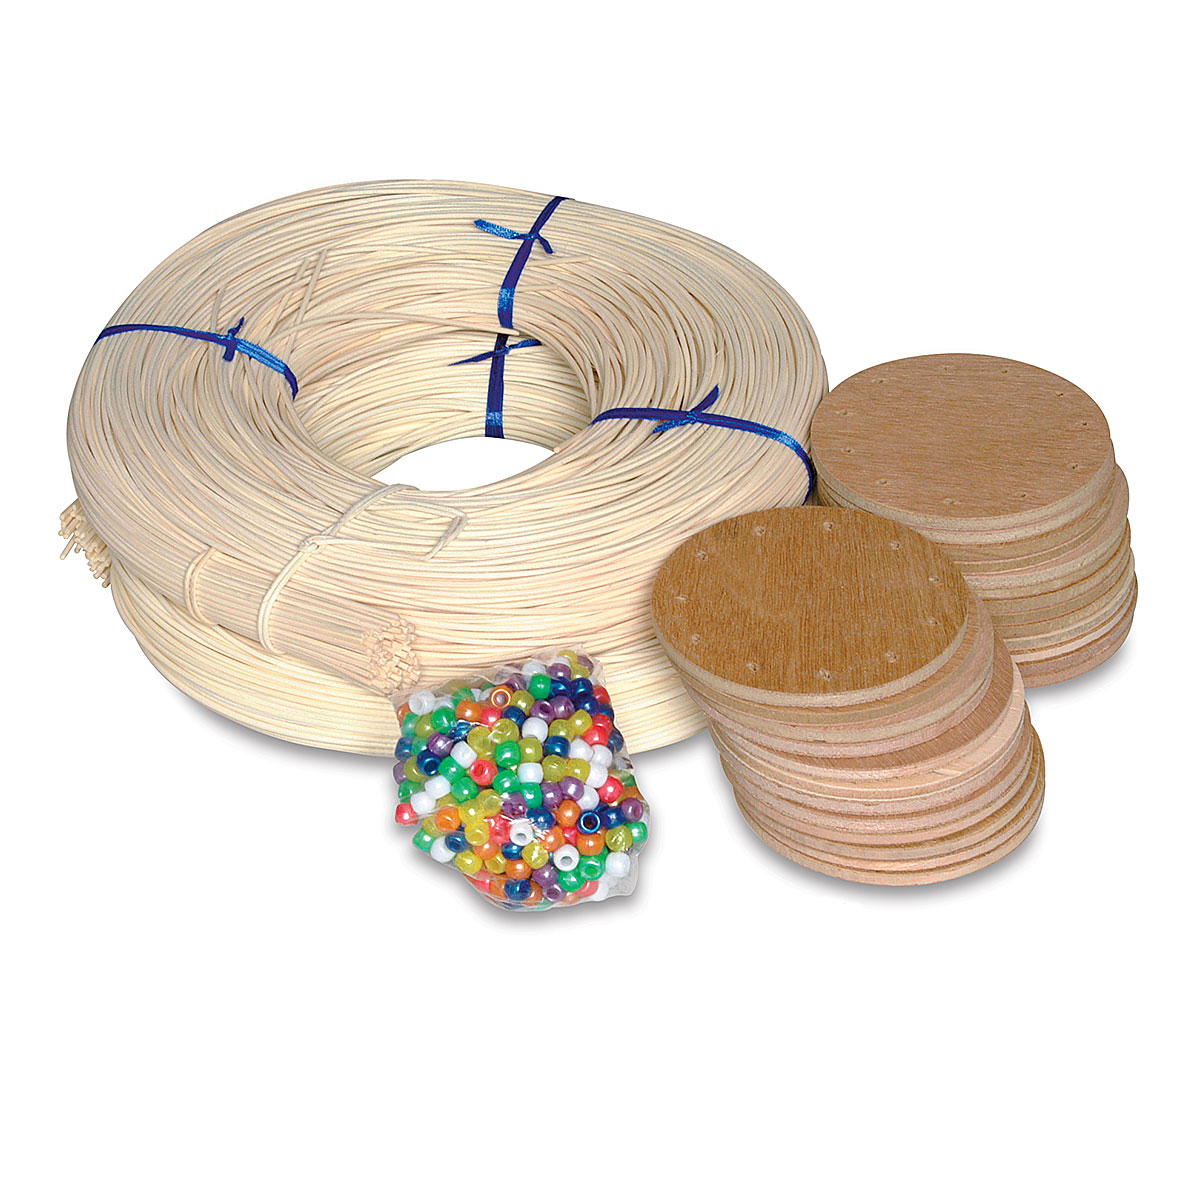 Basketry Kit  BLICK Art Materials